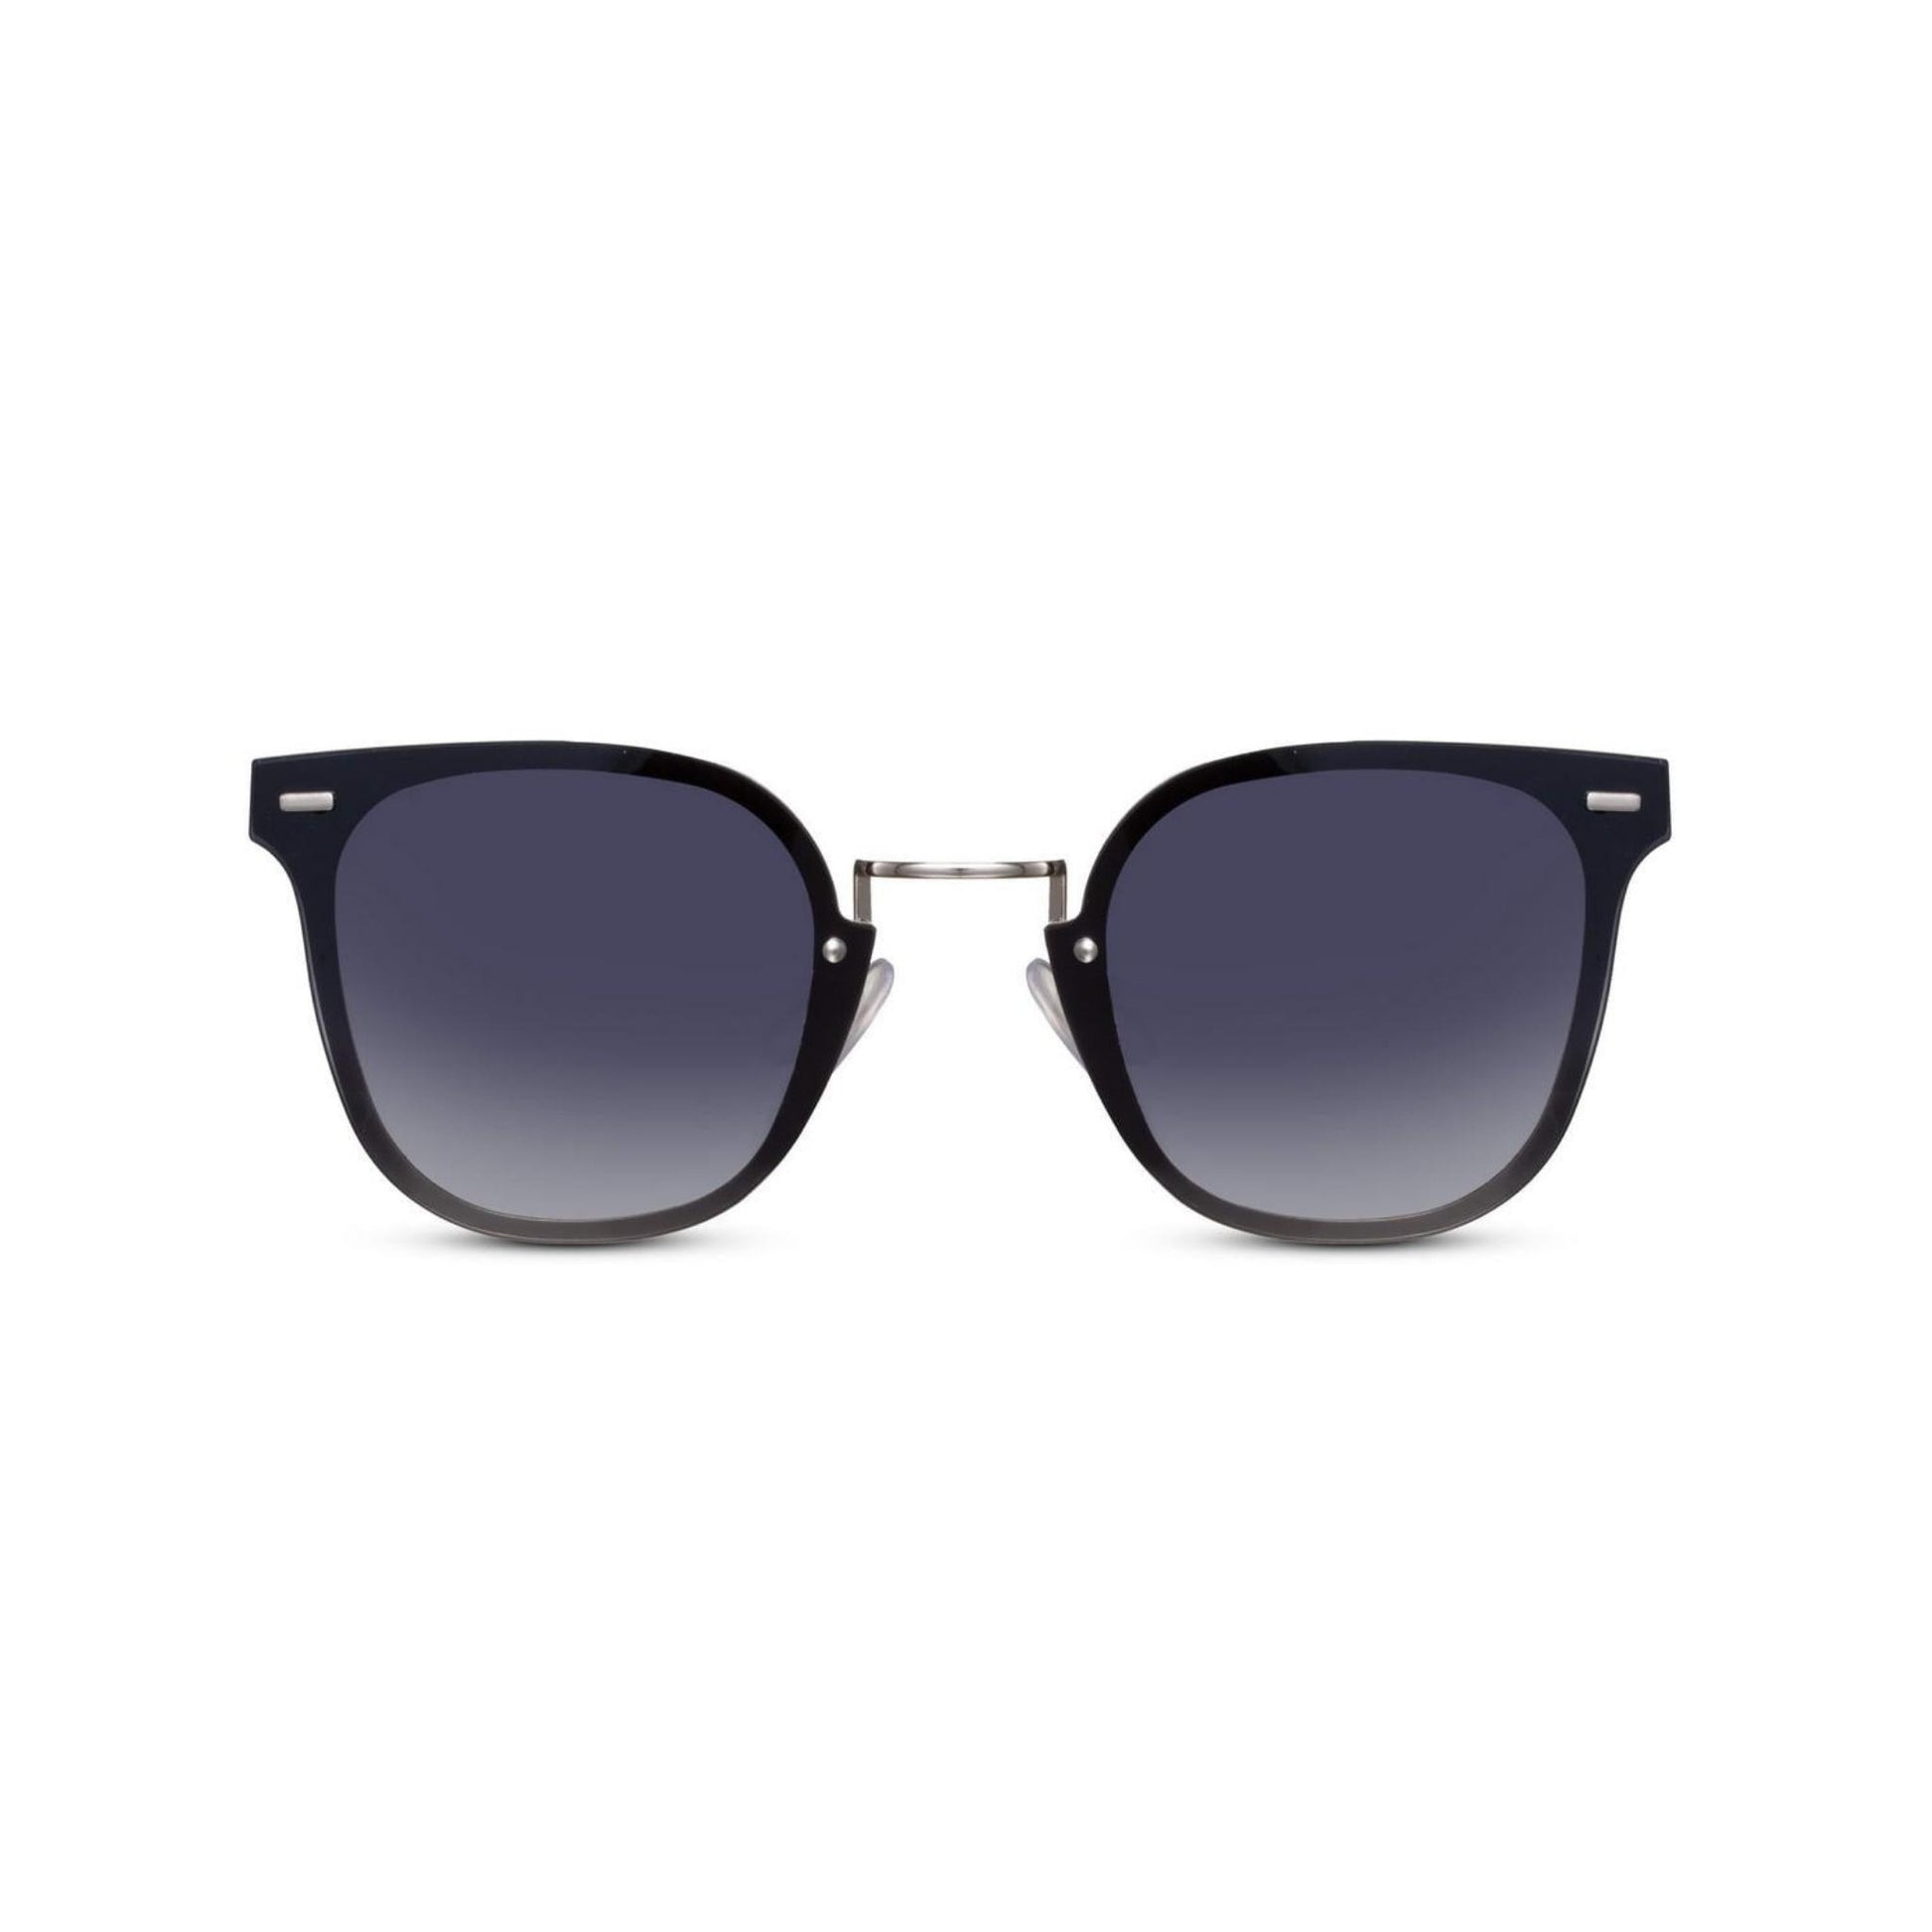 Ορθογώνια Γυαλιά ηλίου Kaly της Exposure Sunglasses με προστασία UV400 σε ασημί χρώμα σκελετού και μαύρο φακό.